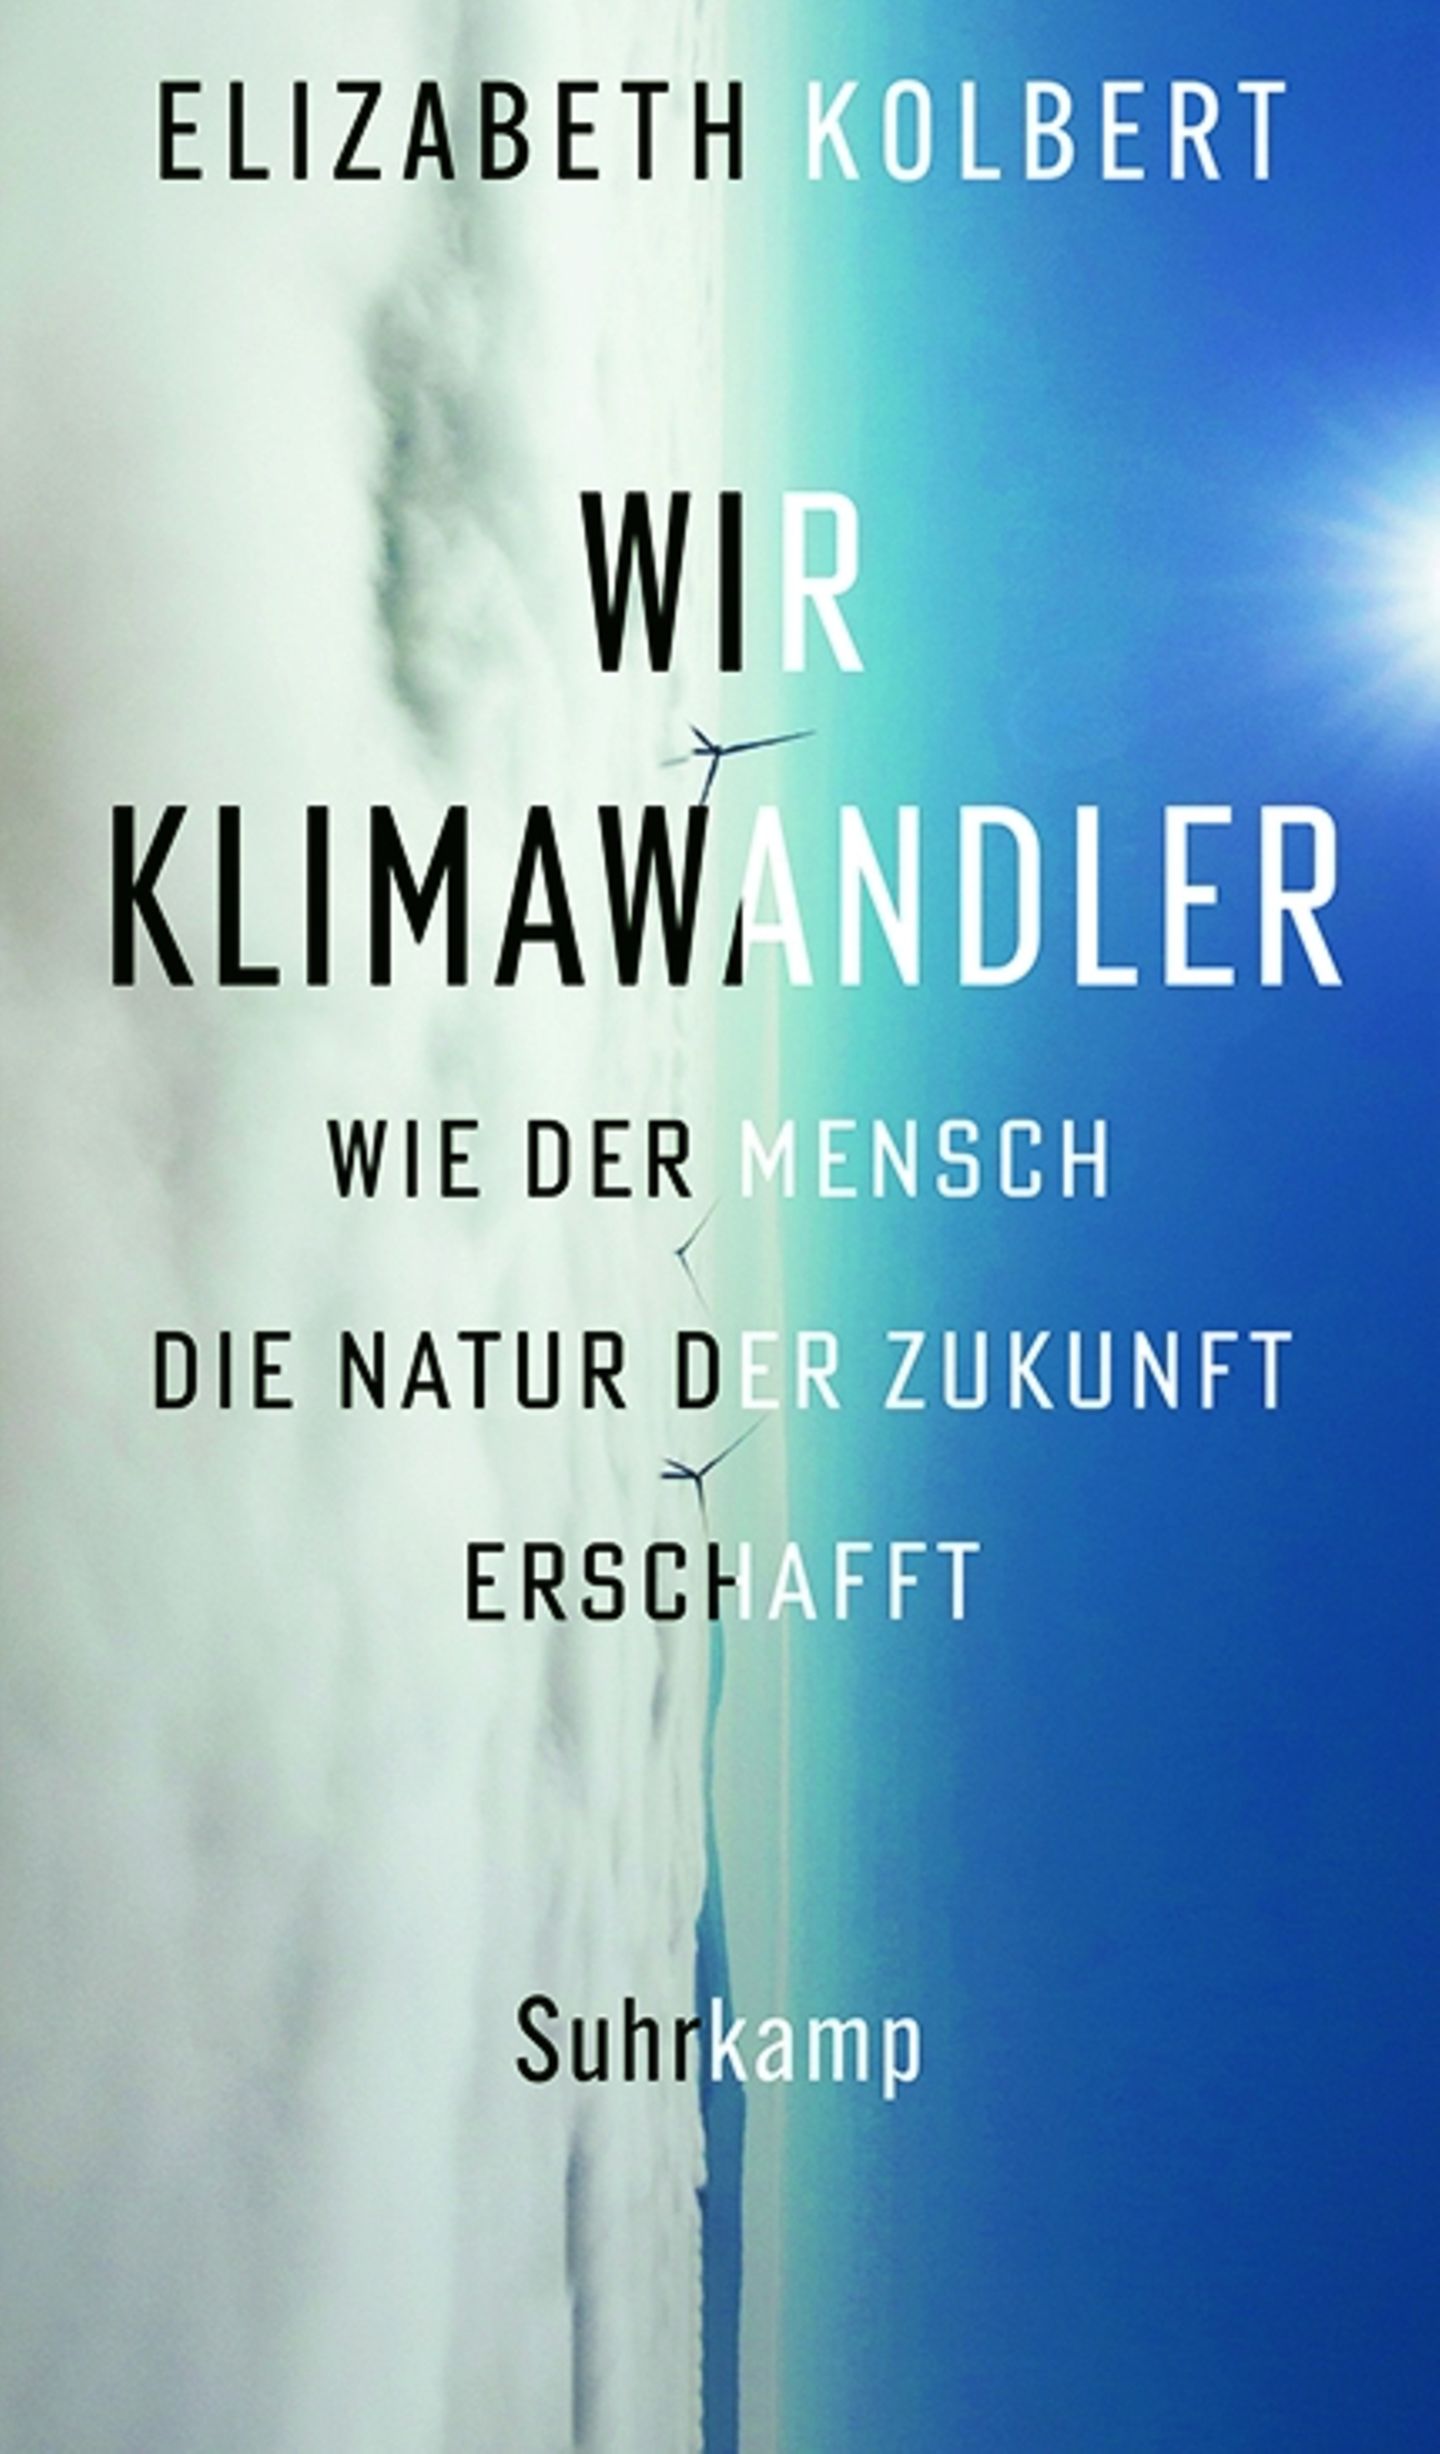 Buchtipps der Redaktion: Buchcover "Wir Klimawandler"